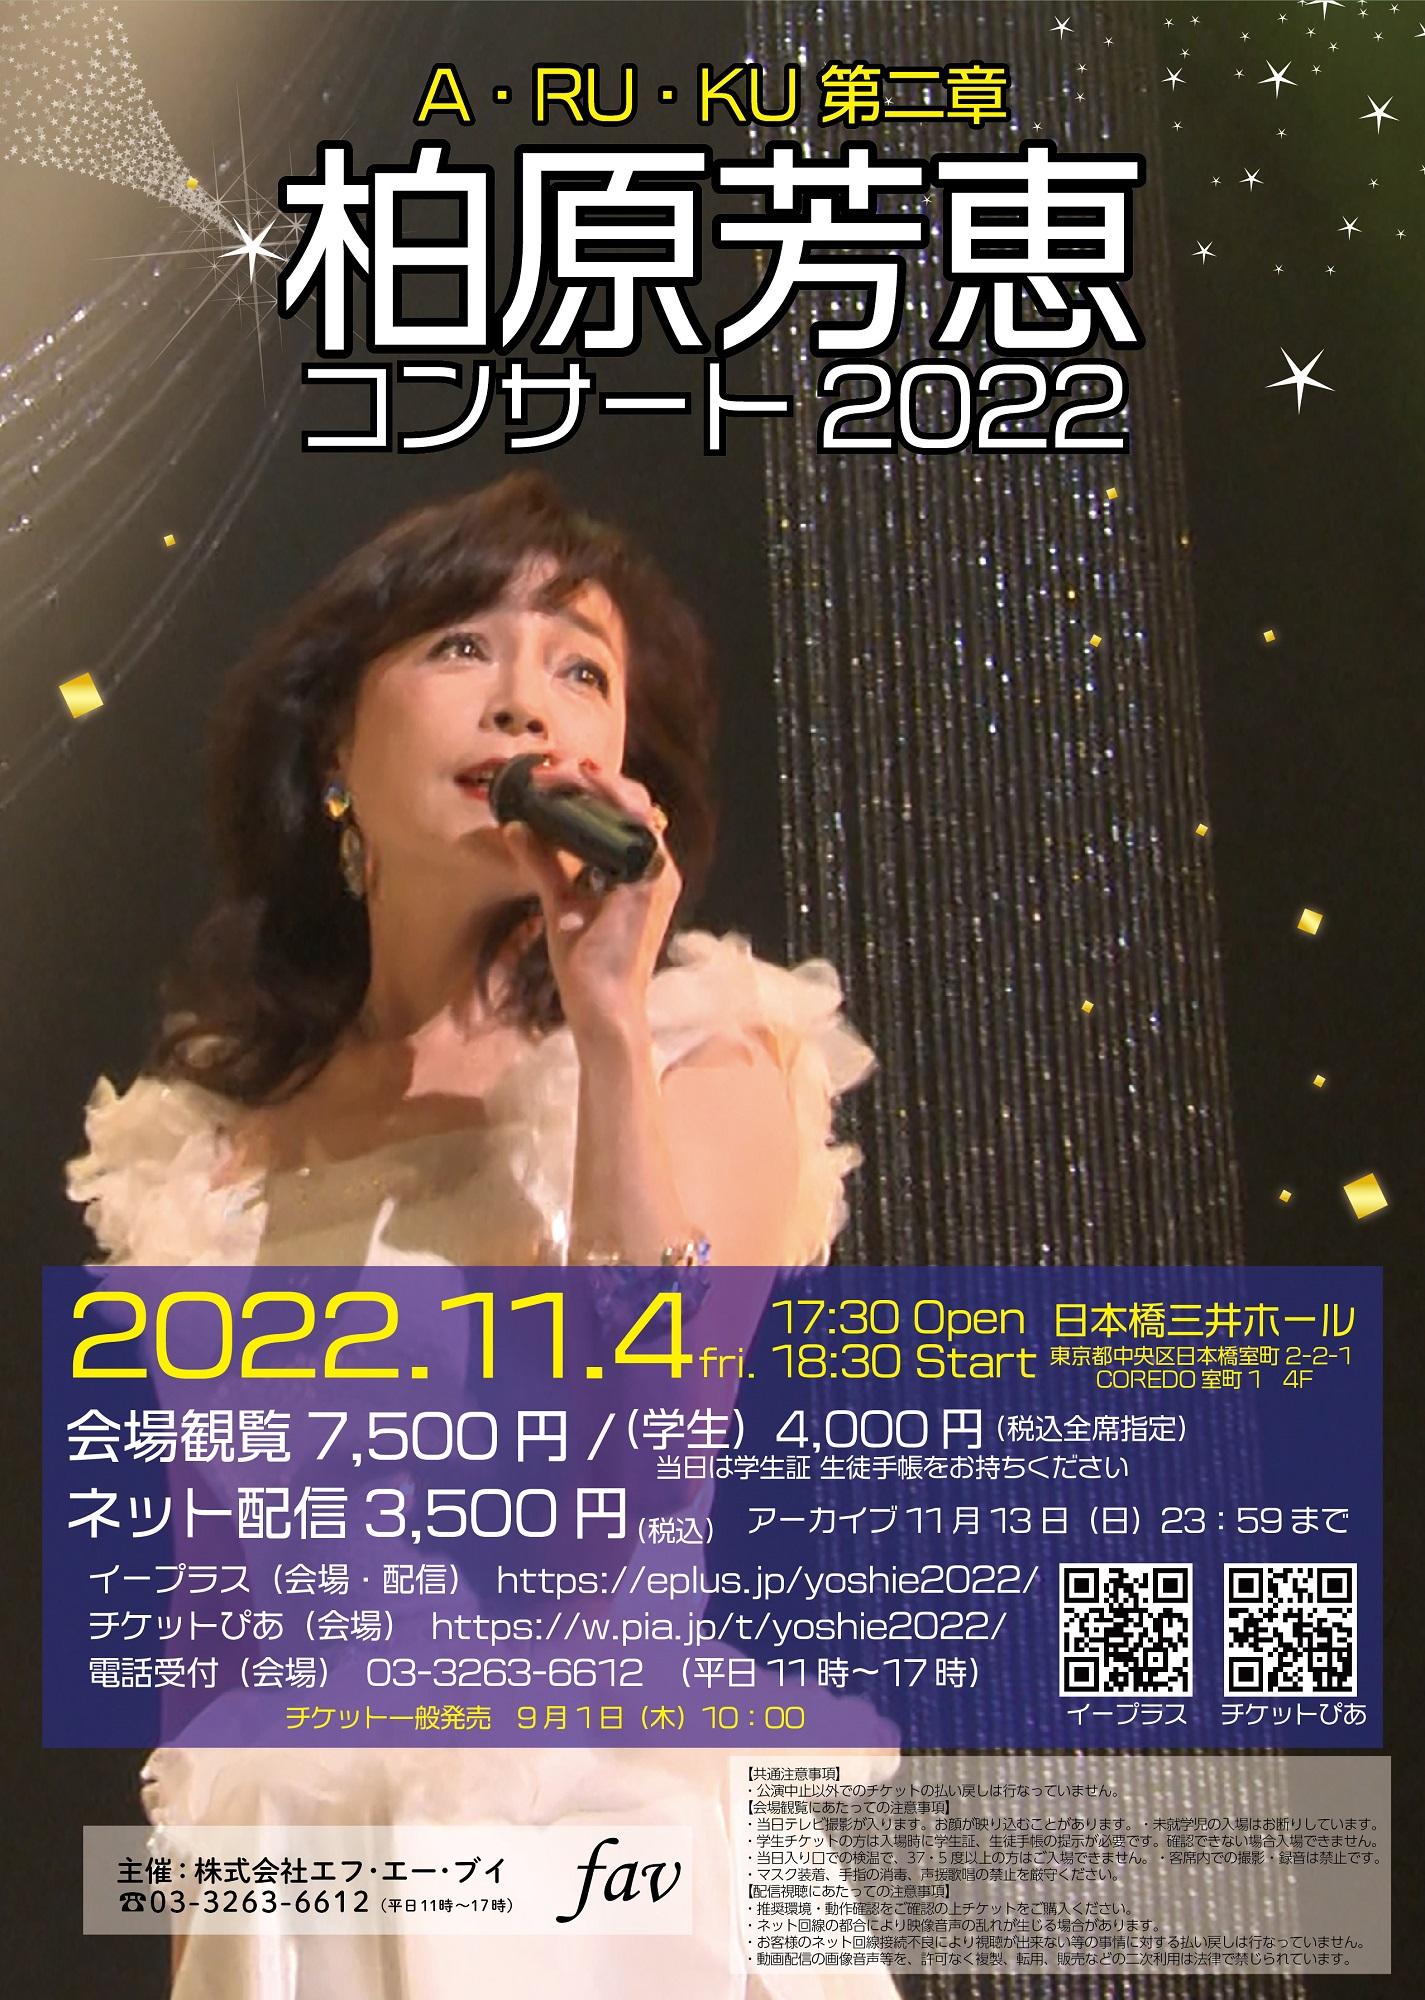 柏原芳恵、2年ぶりハイブリッドコンサートを11/4に日本橋三井 